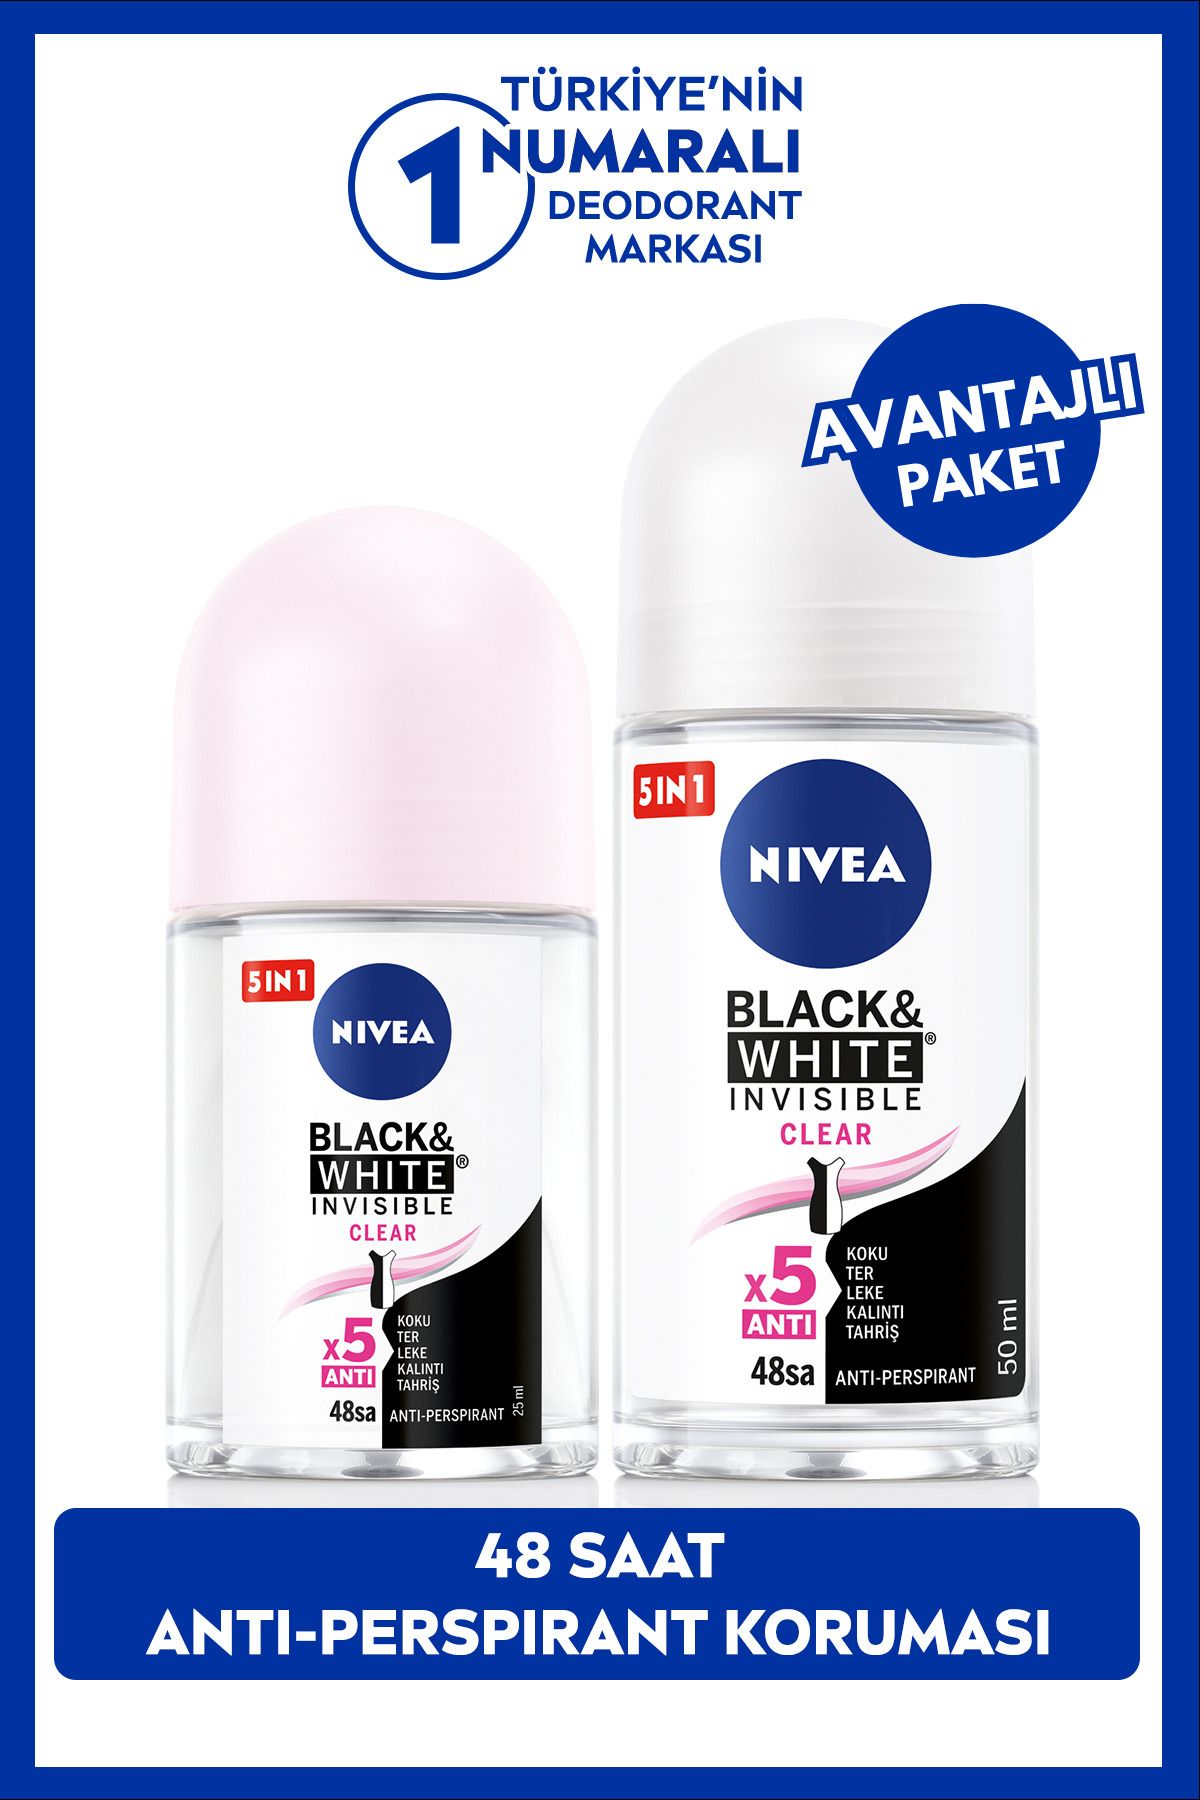 NIVEA Kadın Roll-on Deodorant Black&white Clear 50ml Ve Mini Roll-on Black&white Clear 25ml